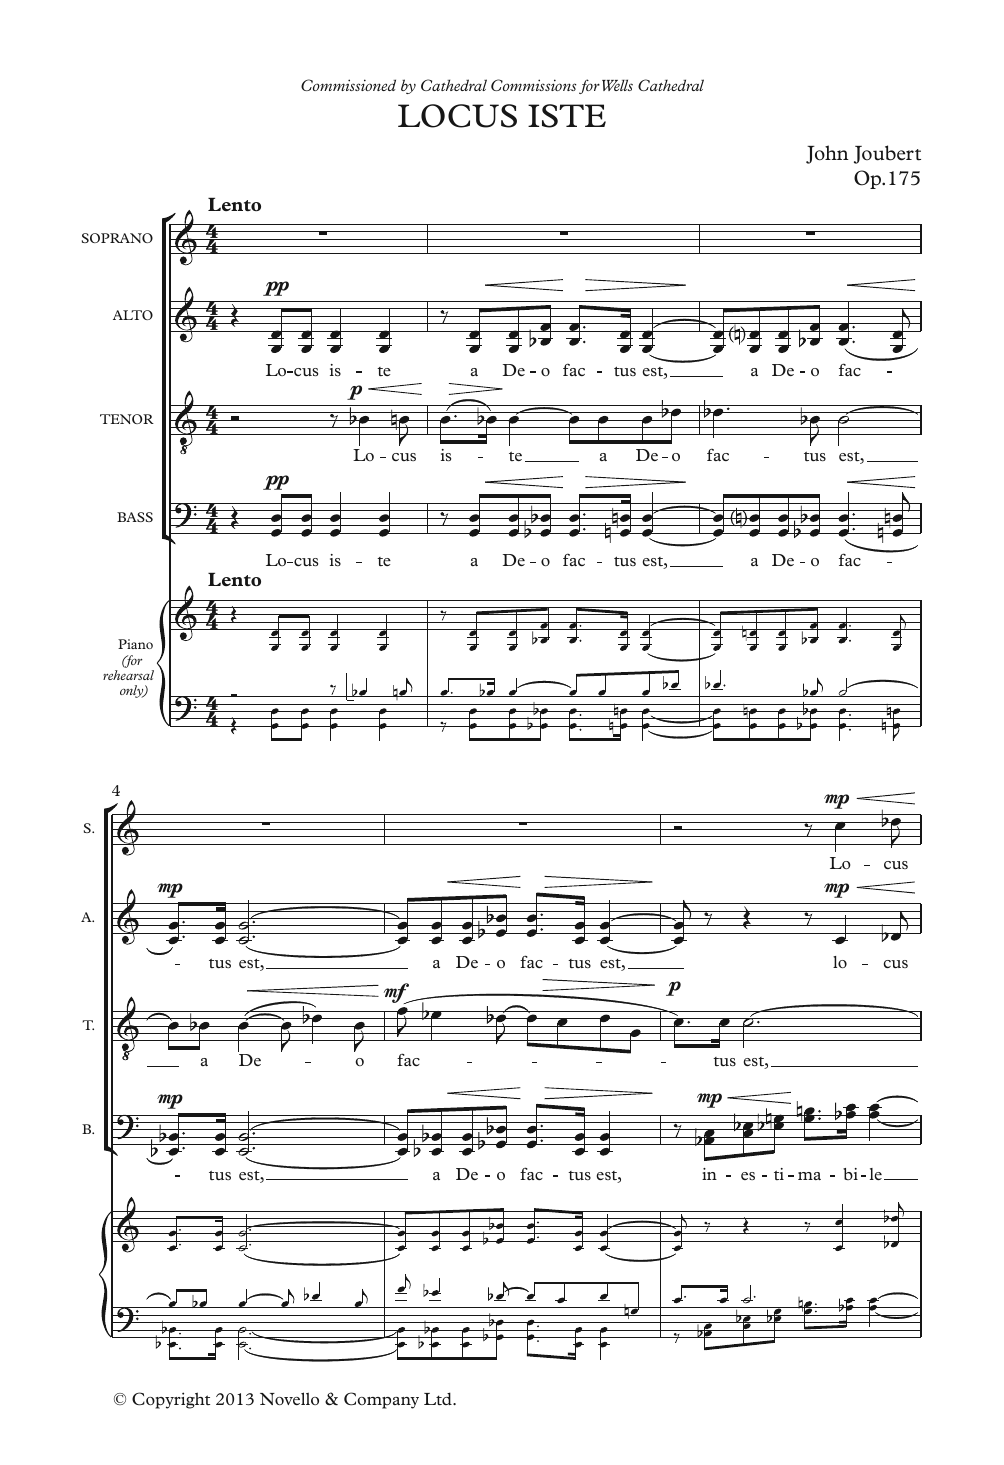 John Joubert Locus Iste Sheet Music Notes & Chords for Choir - Download or Print PDF